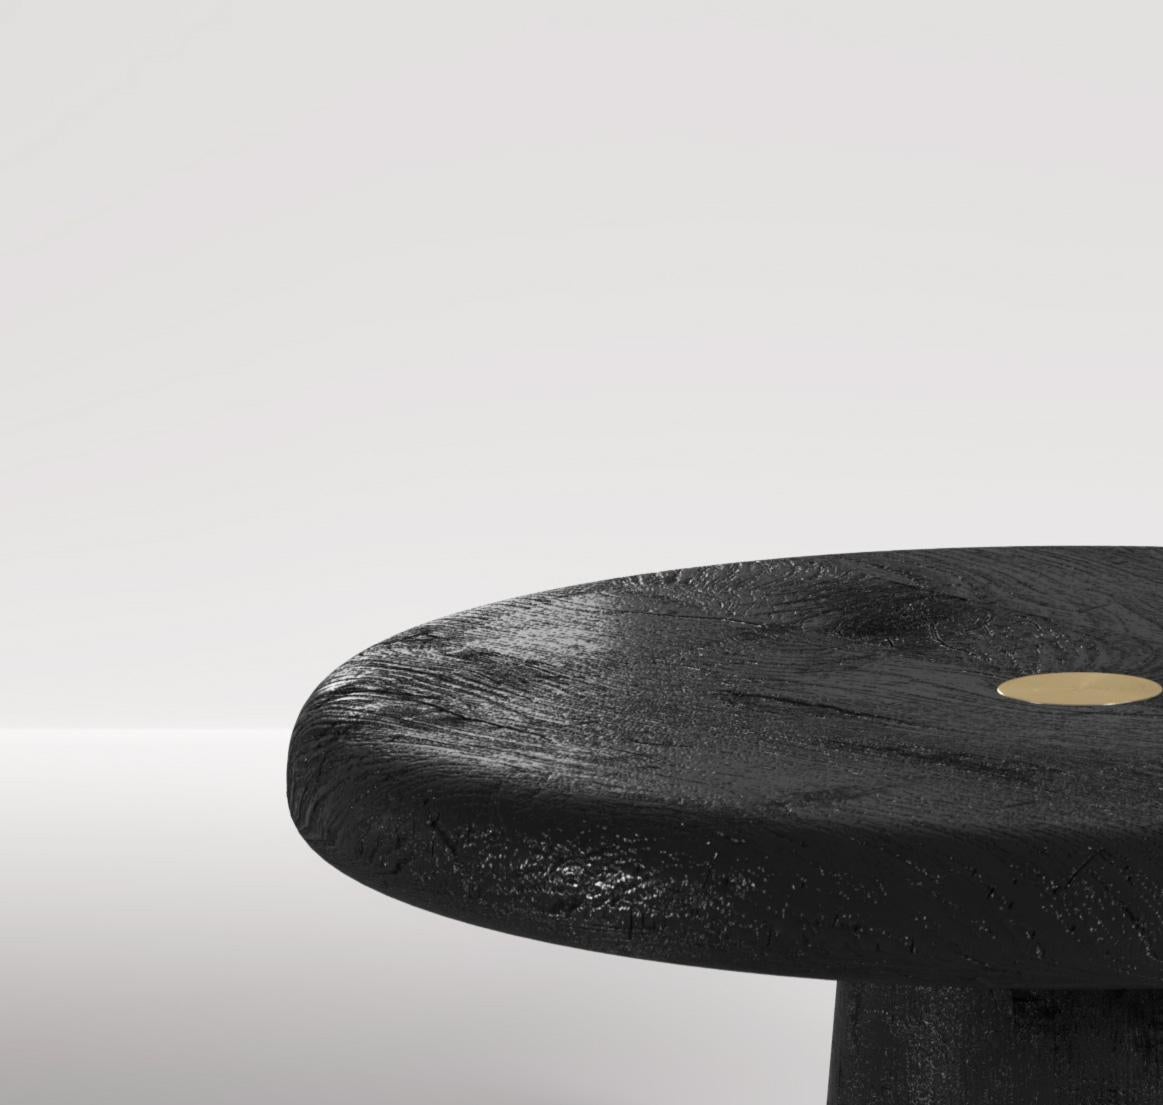 Les tables basses Spore sont un ensemble de tables basses rendues uniques par une série de détails complexes. La base de chaque table est parfaitement usinée dans une seule pièce de bois, avec des courbes douces qui ajoutent à l'esthétique organique